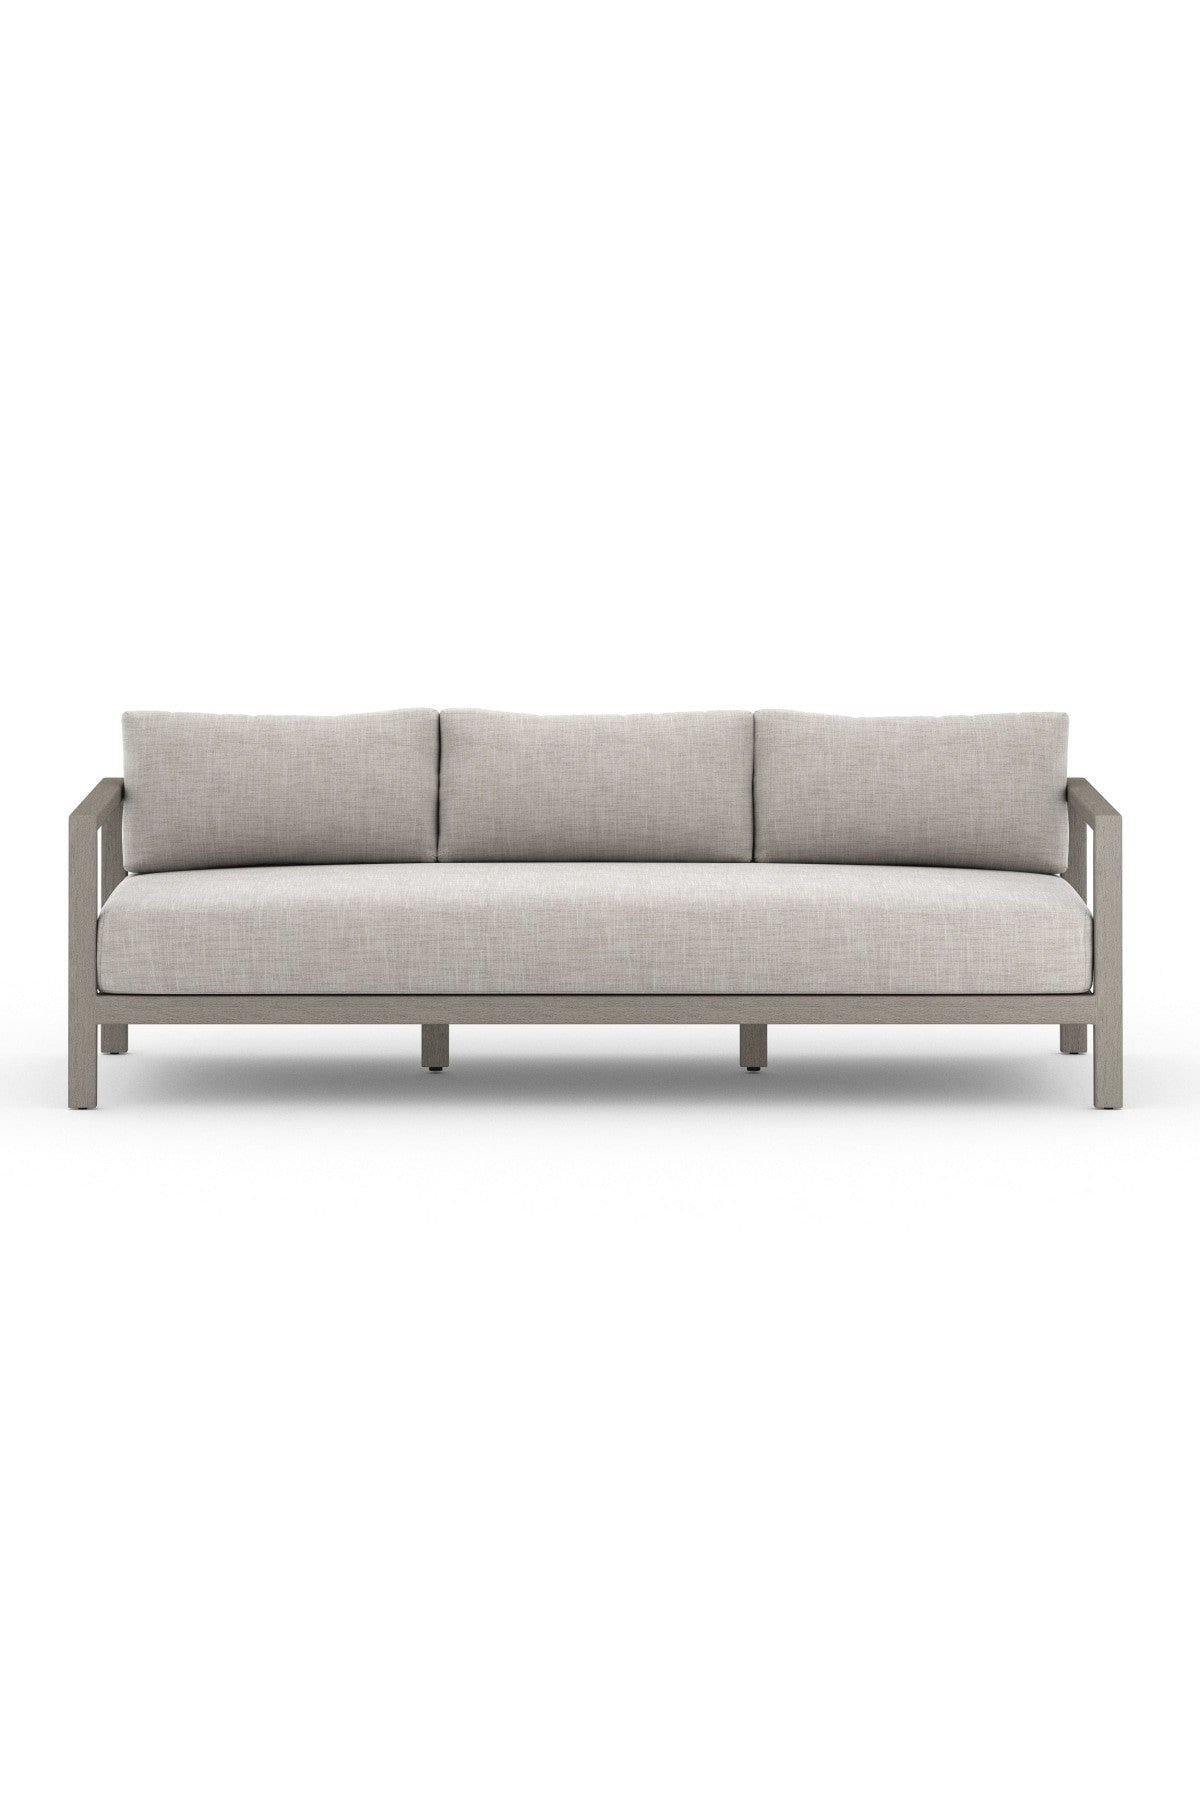 Montauk Outdoor Sofa - 2 Sizes